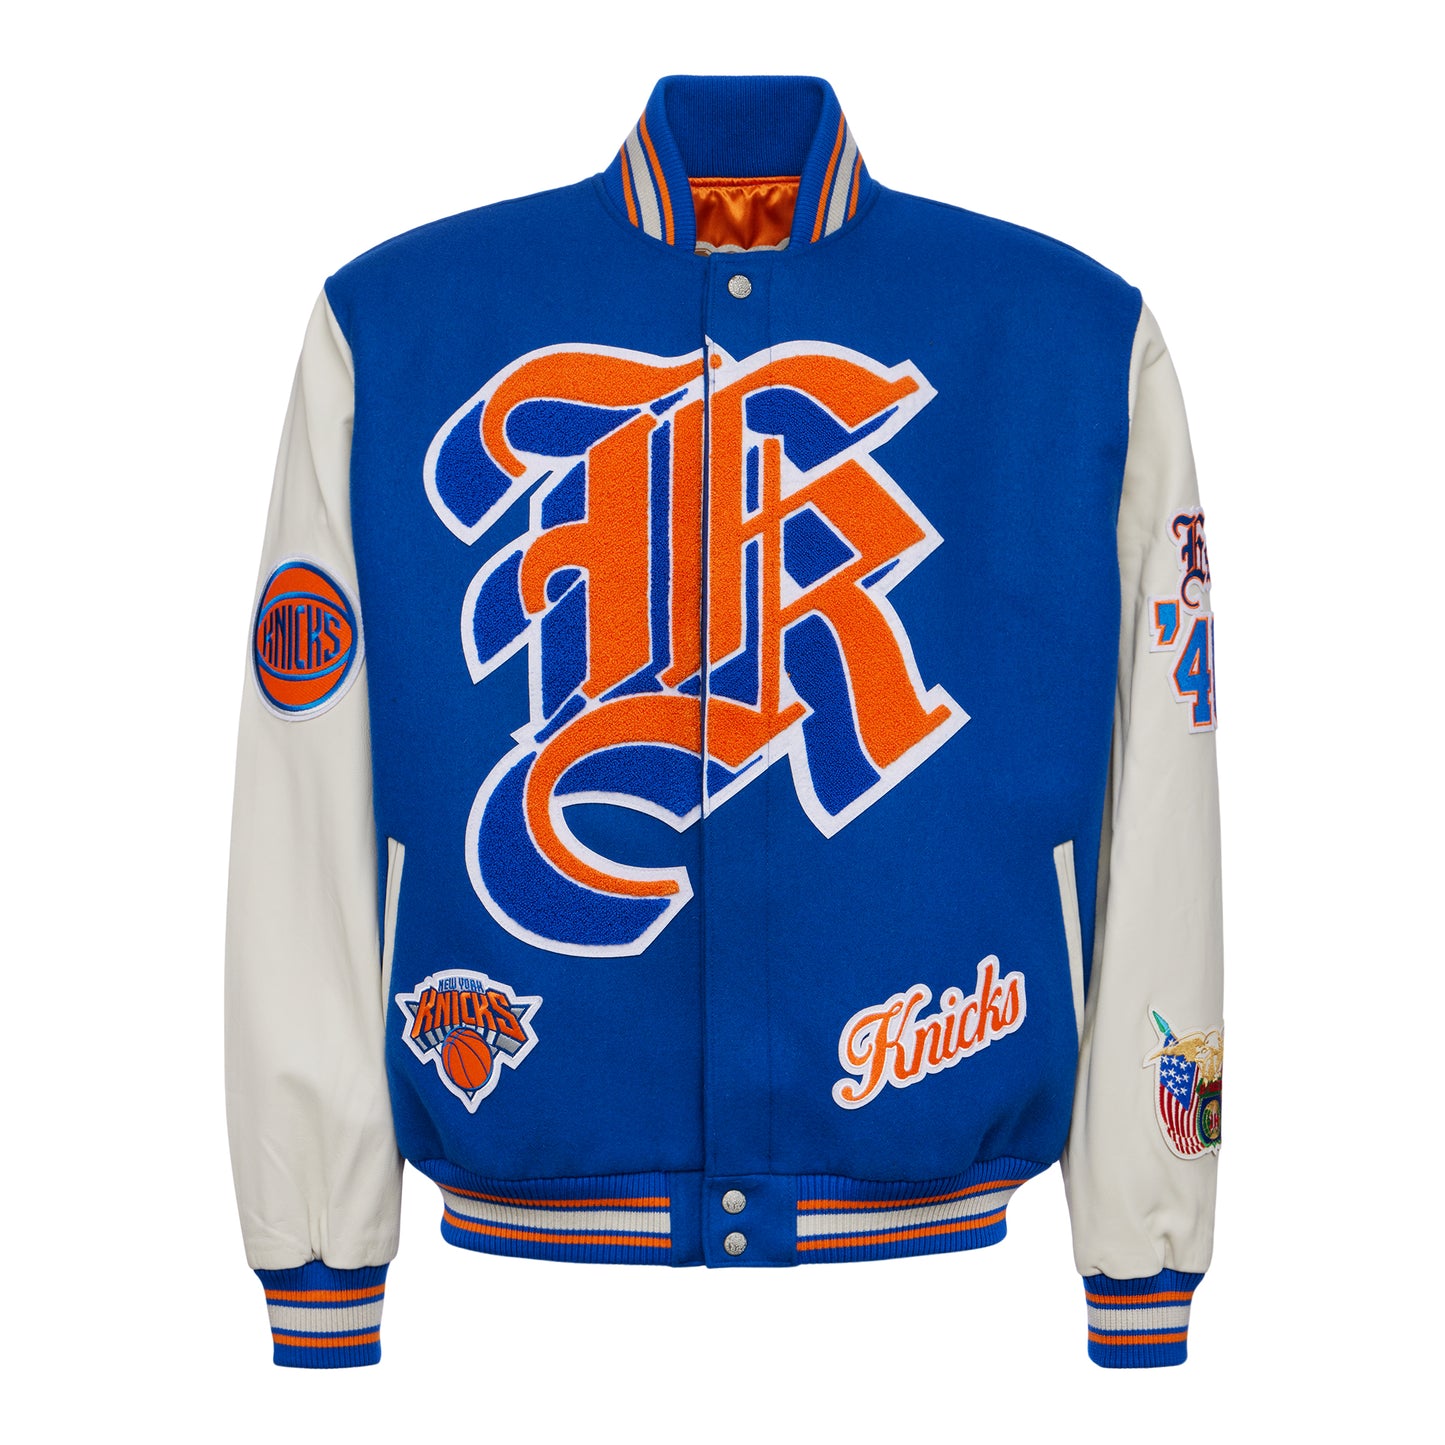 New York Knicks Orange Varsity Jacket